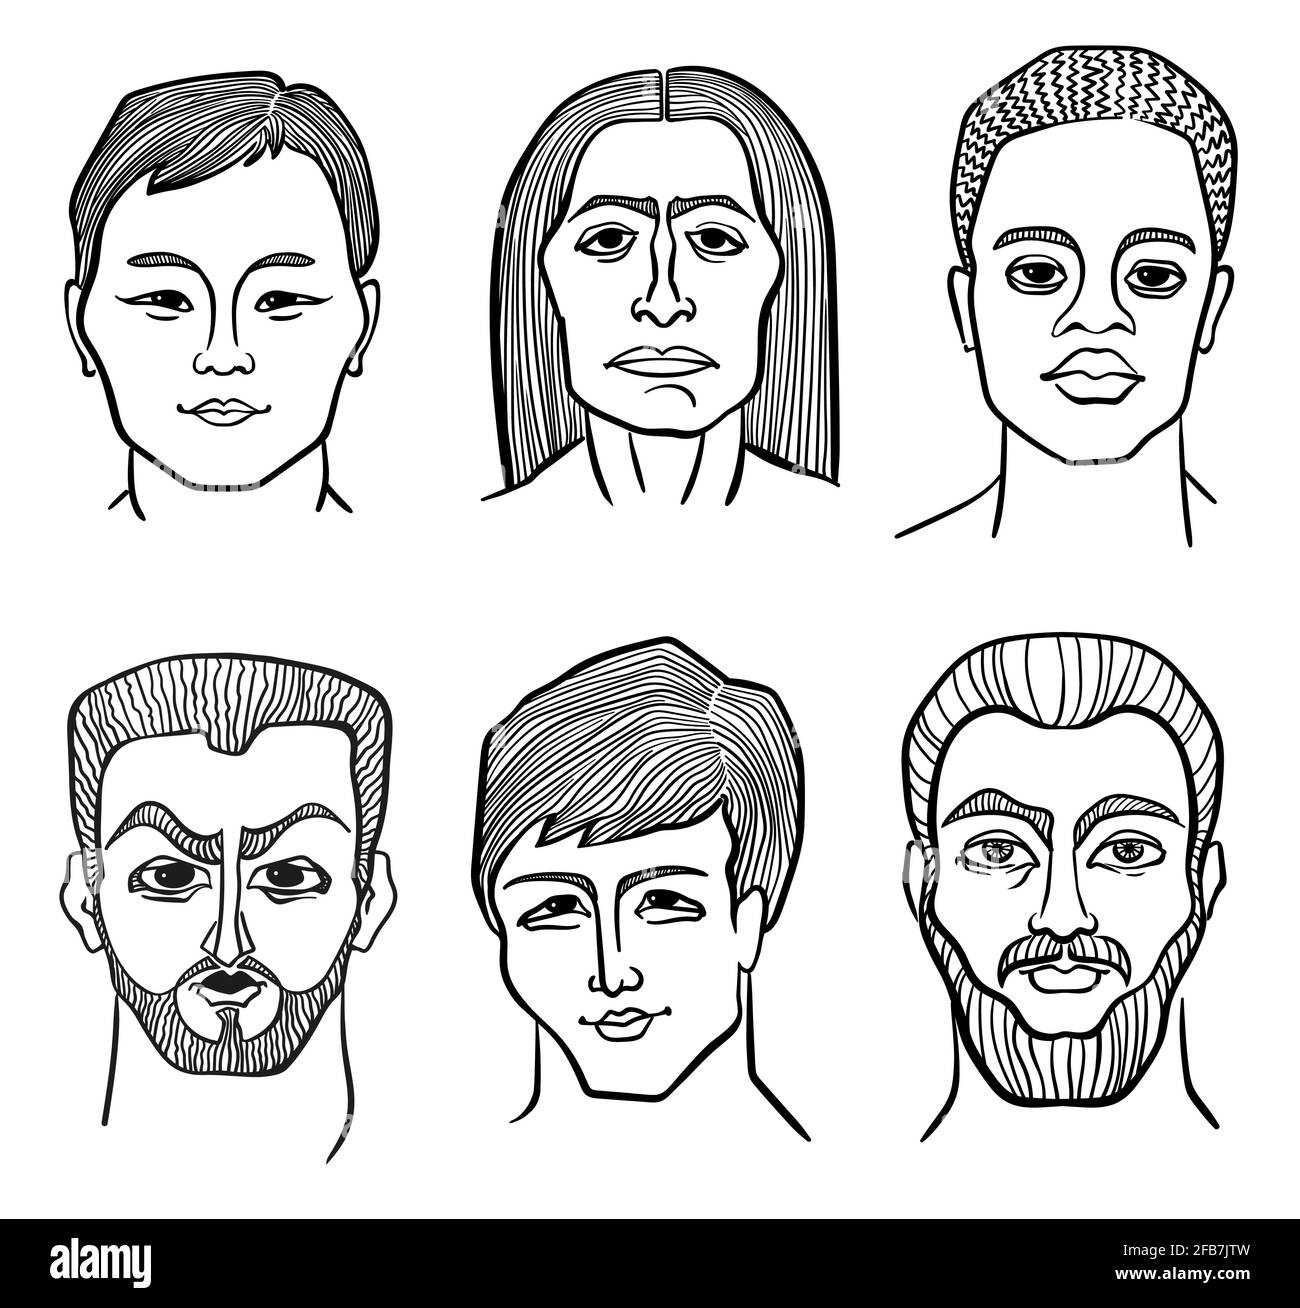 Sechs männliche Gesichter unterschiedlicher Erscheinungsformen. Lineare Schwarz-Weiß-Porträts Stock Vektor